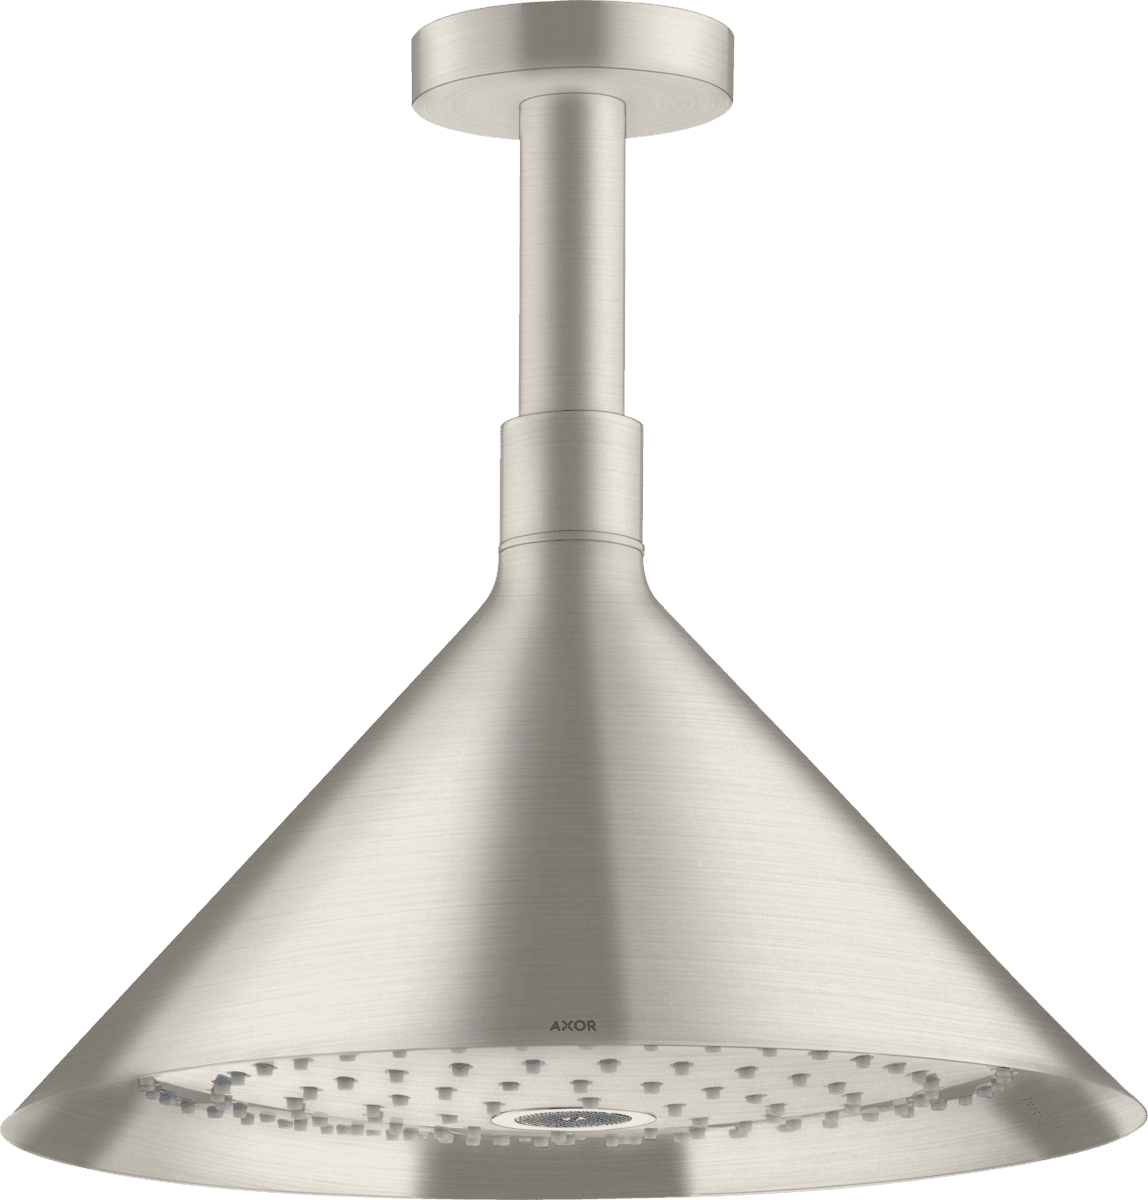 Obrázek HANSGROHE AXOR Sprchy/přední horní sprcha 240 2jet se stropním připojením #26022800 - nerezová ocel Optic